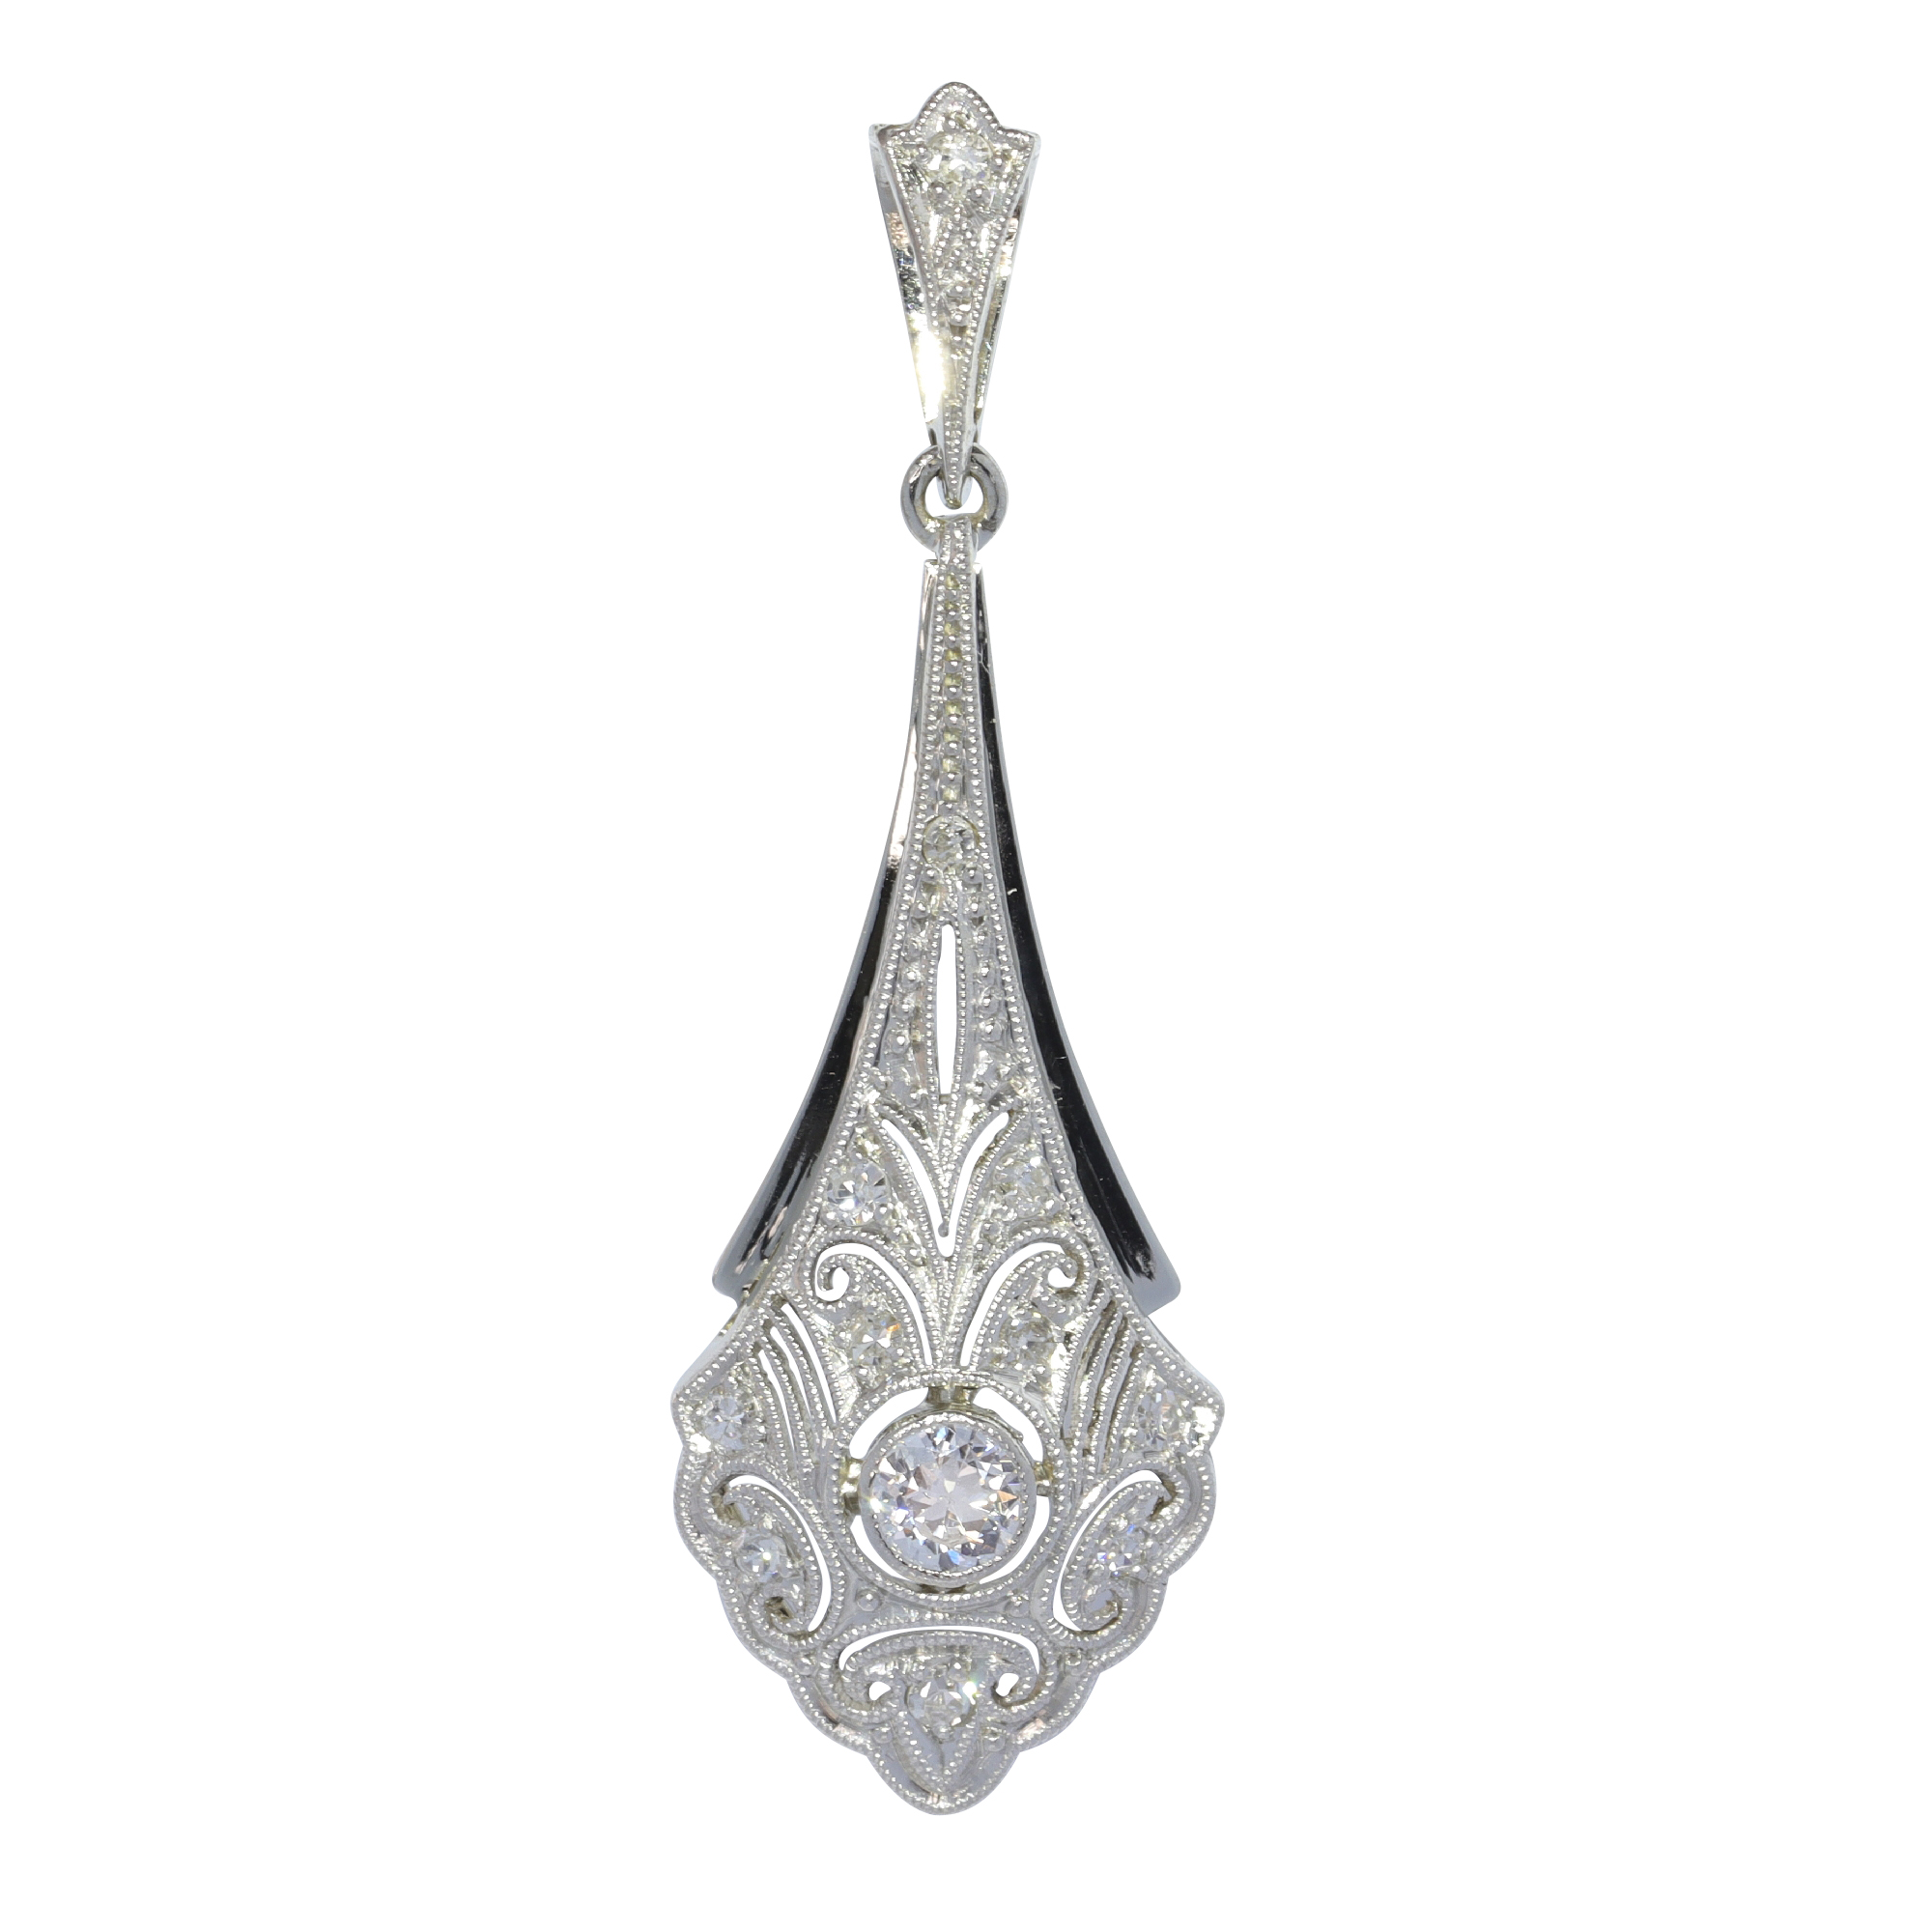 Vintage 1920's Art Deco pendant with diamonds